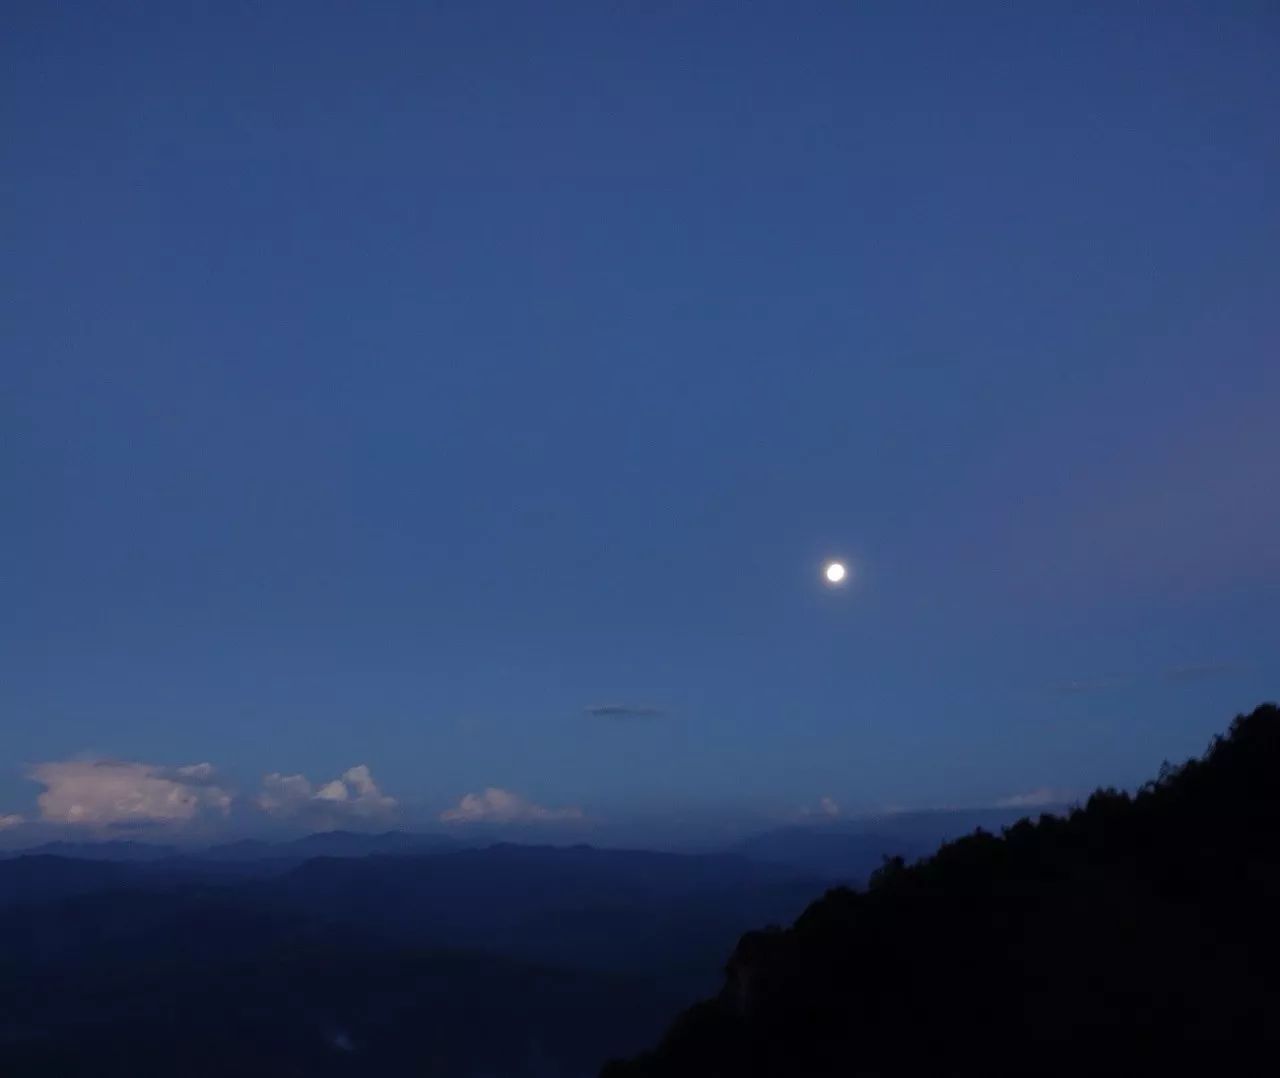 昨天,我们推出"拍月"特别策划,邀请广大网友拍摄中秋月亮.